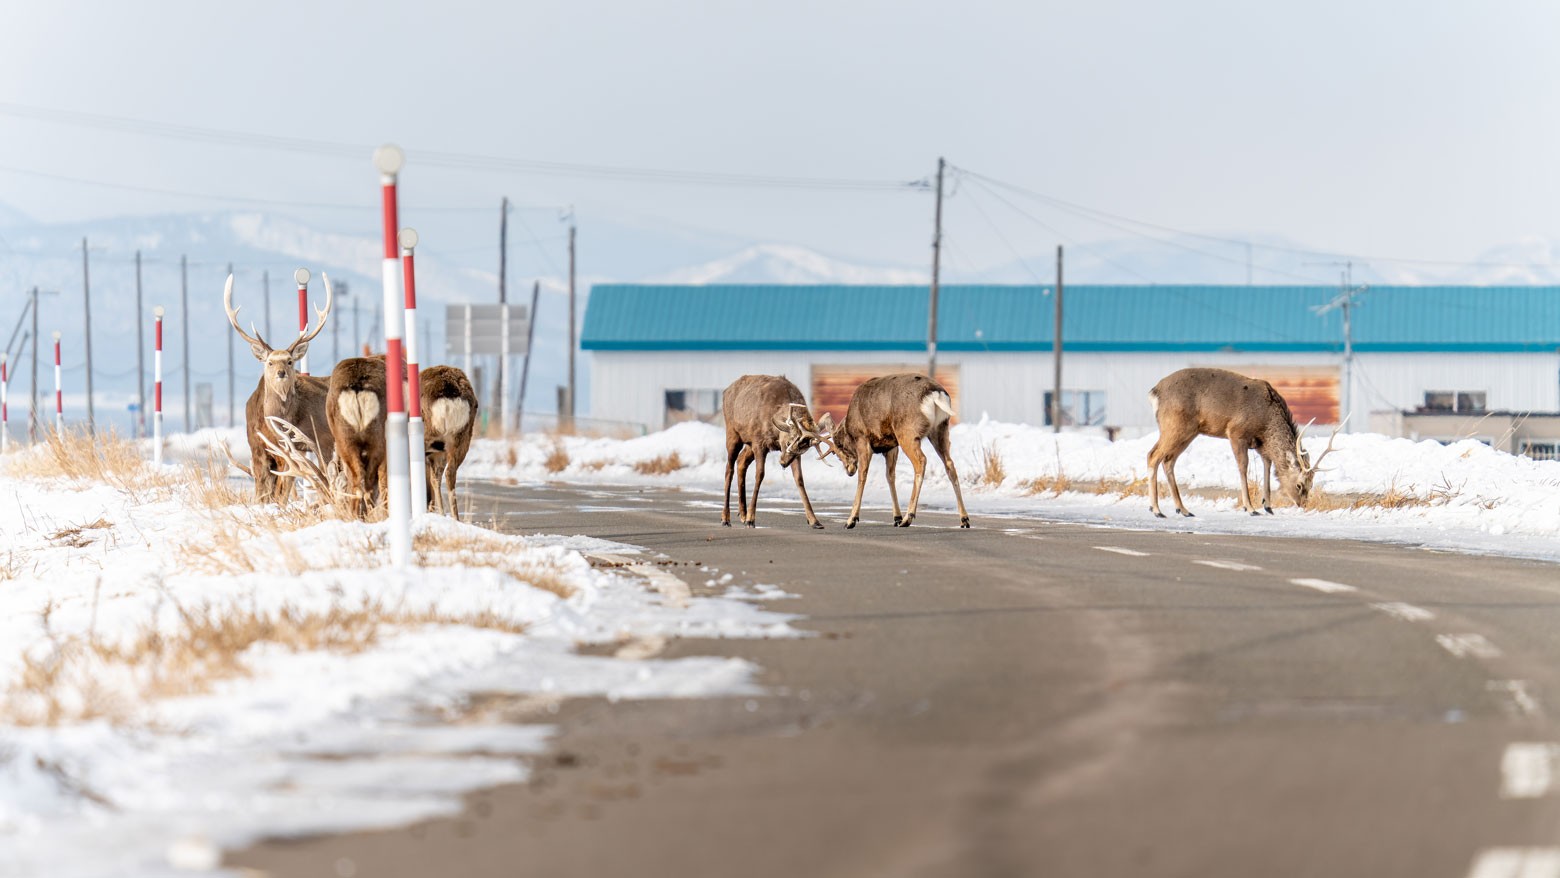 Deer in the headlights pose traffic danger in Hokkaido